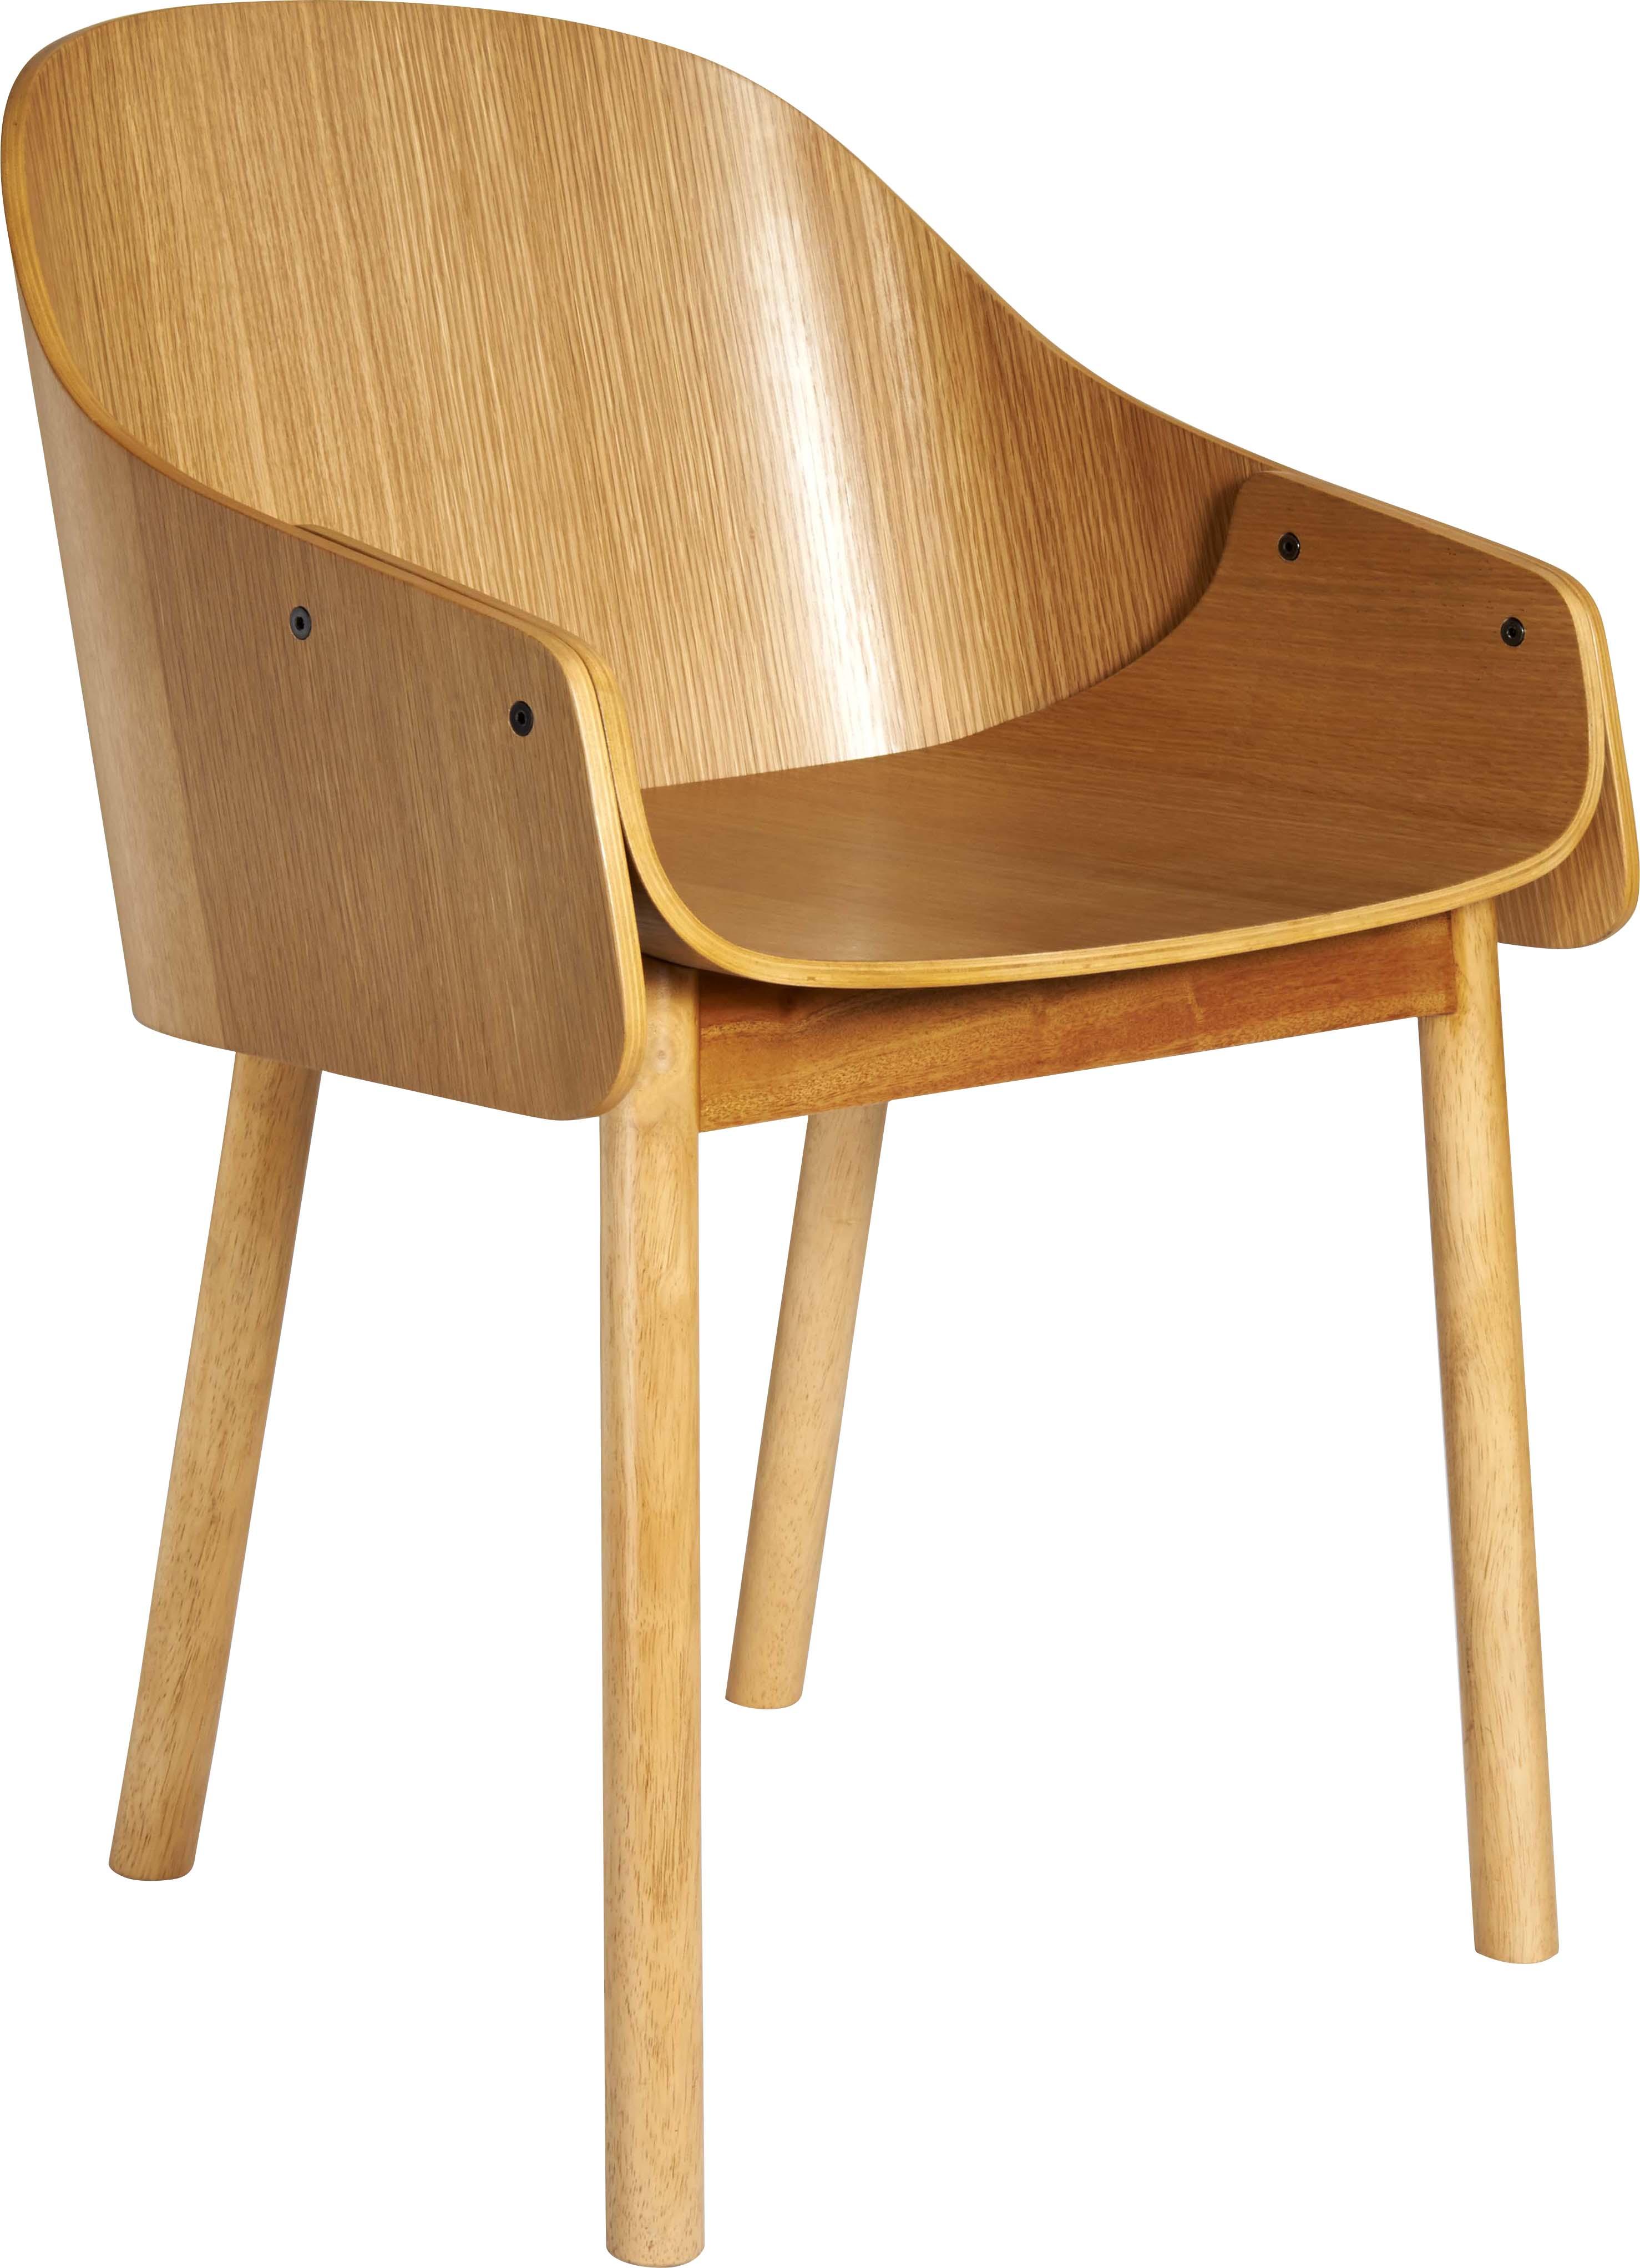 Houten stoel - Habitat - 149 euro